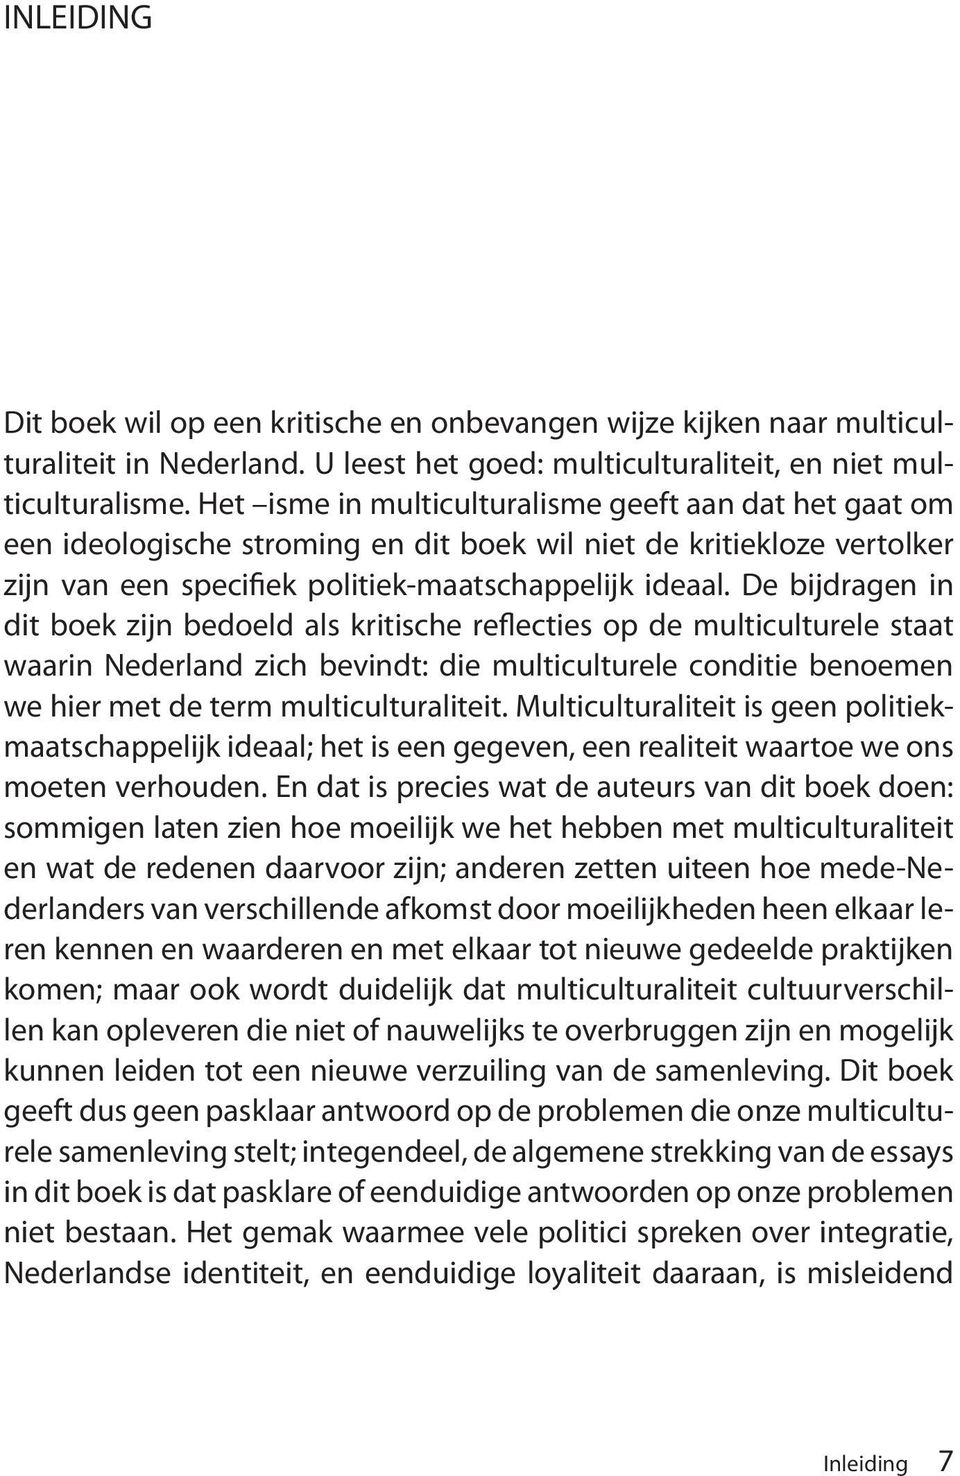 De bijdragen in dit boek zijn bedoeld als kritische reflecties op de multiculturele staat waarin Nederland zich bevindt: die multiculturele conditie benoemen we hier met de term multiculturaliteit.